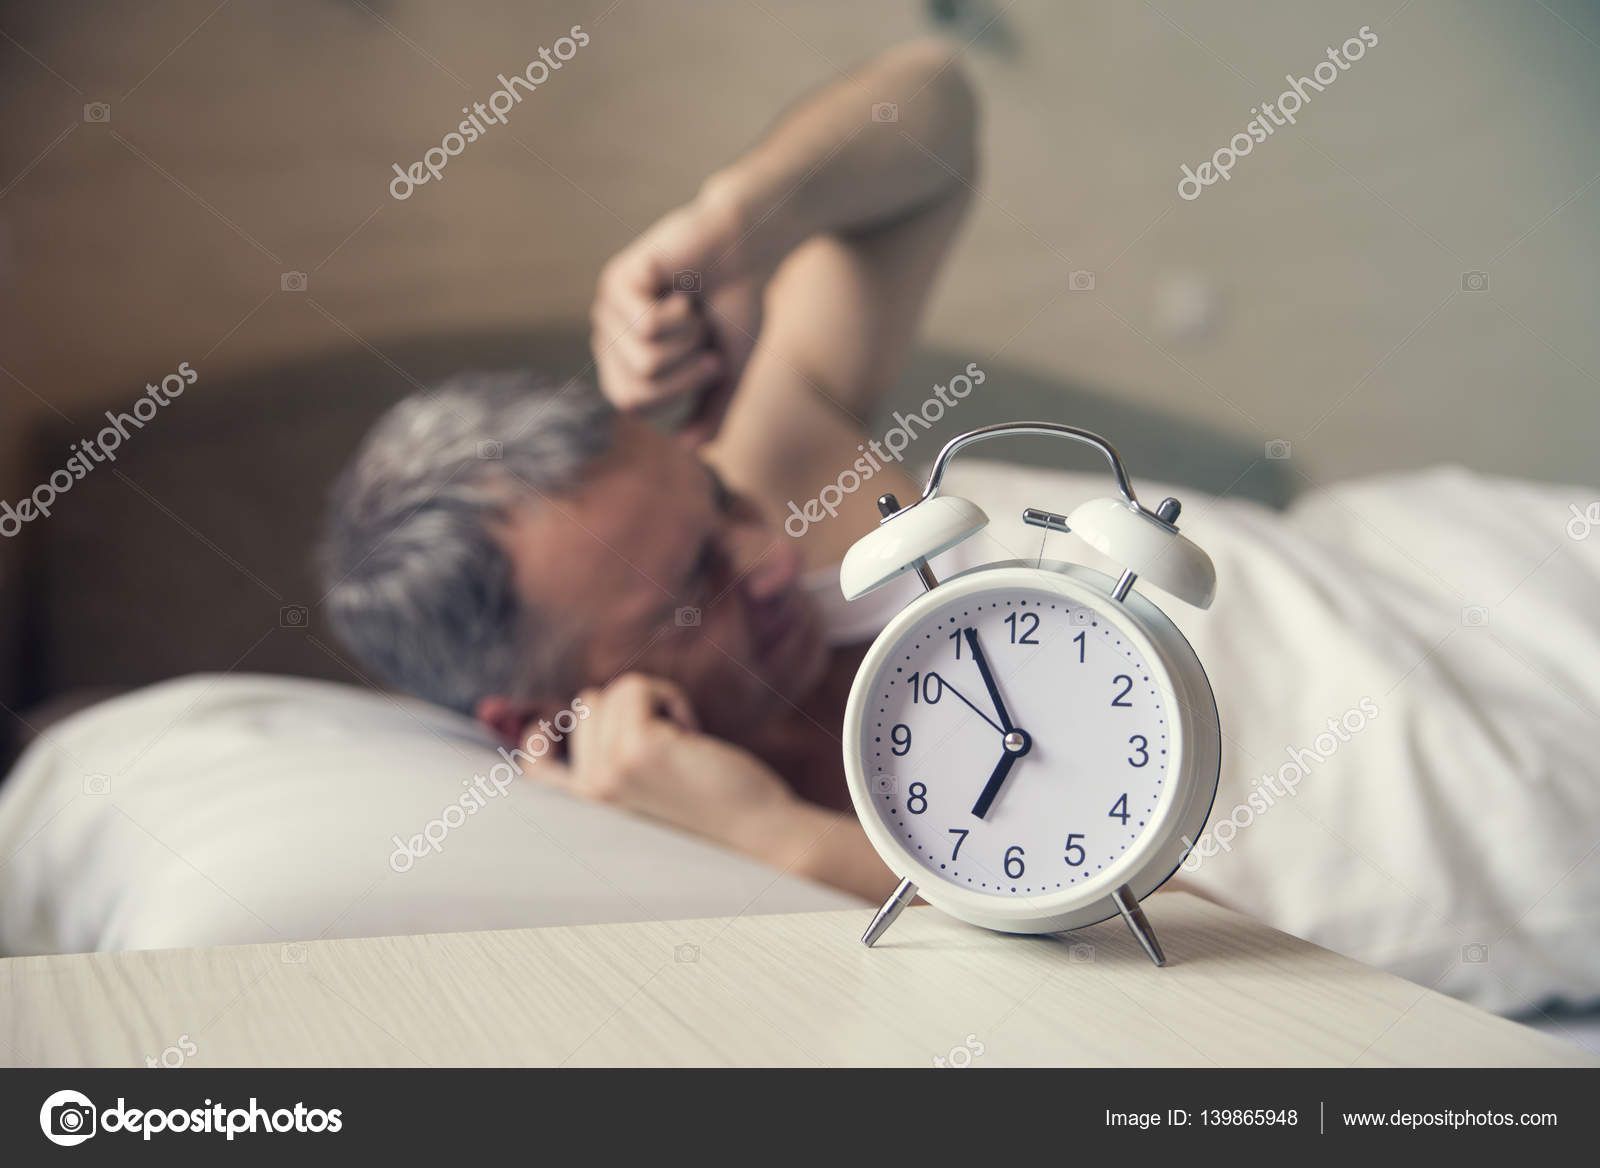 Долгое пробуждение. Человек будильник. Человек в постели утро. Человек проснулся. Спящий человек с будильником.